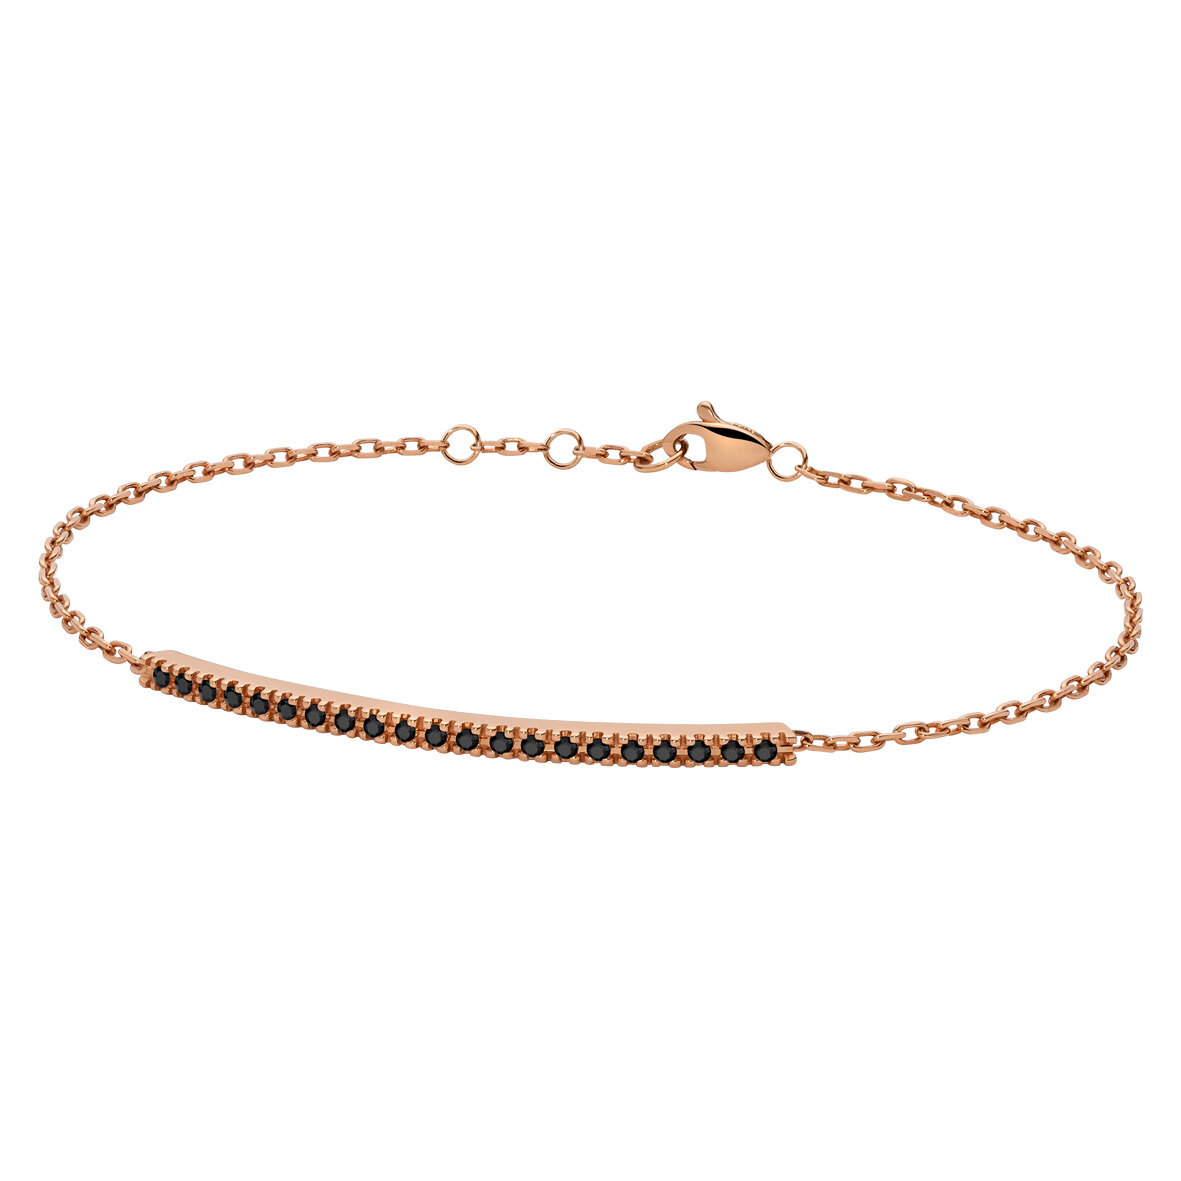 Bracciale barretta tennis in oro rosa e diamanti neri - Collezione Backspin